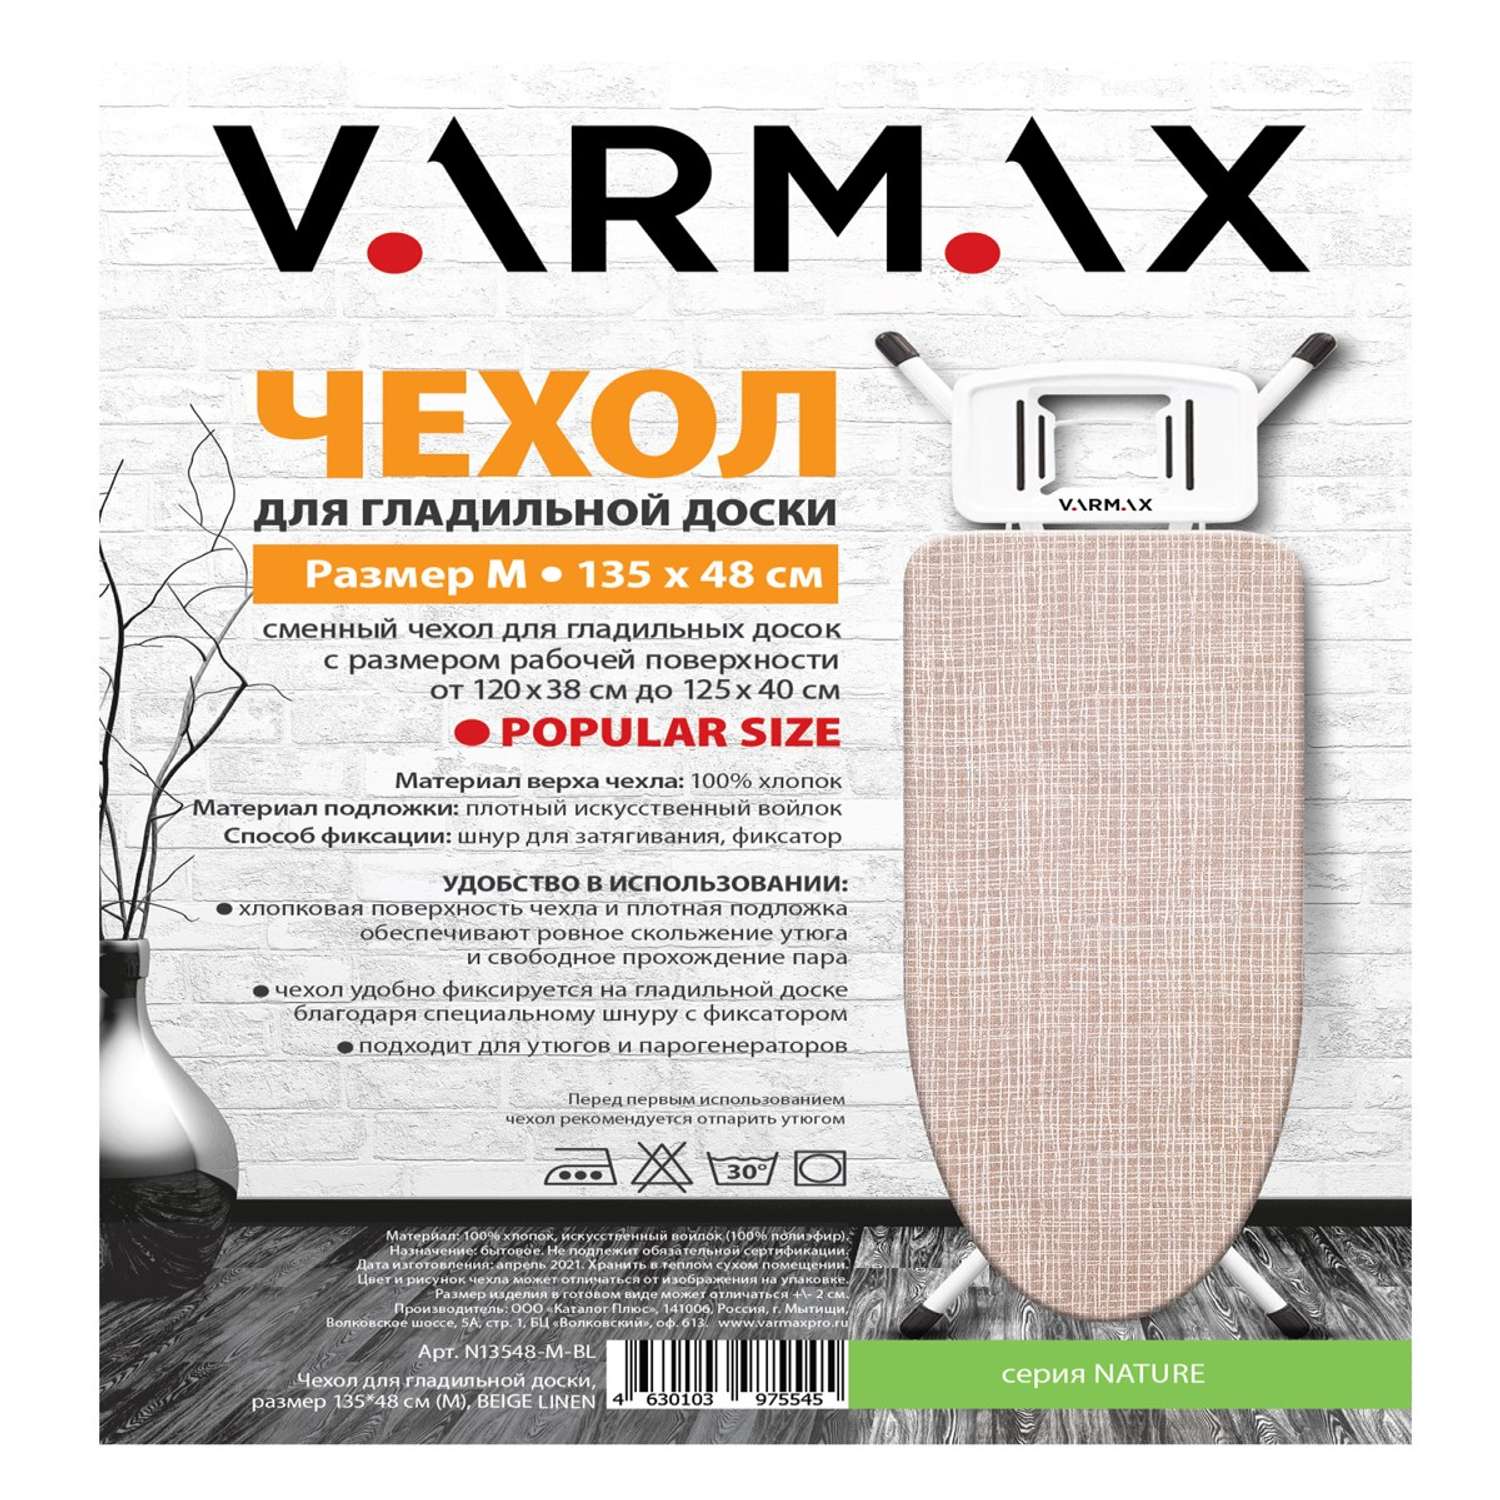 Чехол для гладильной доски Varmax 135*48 см M belge linen - фото 2